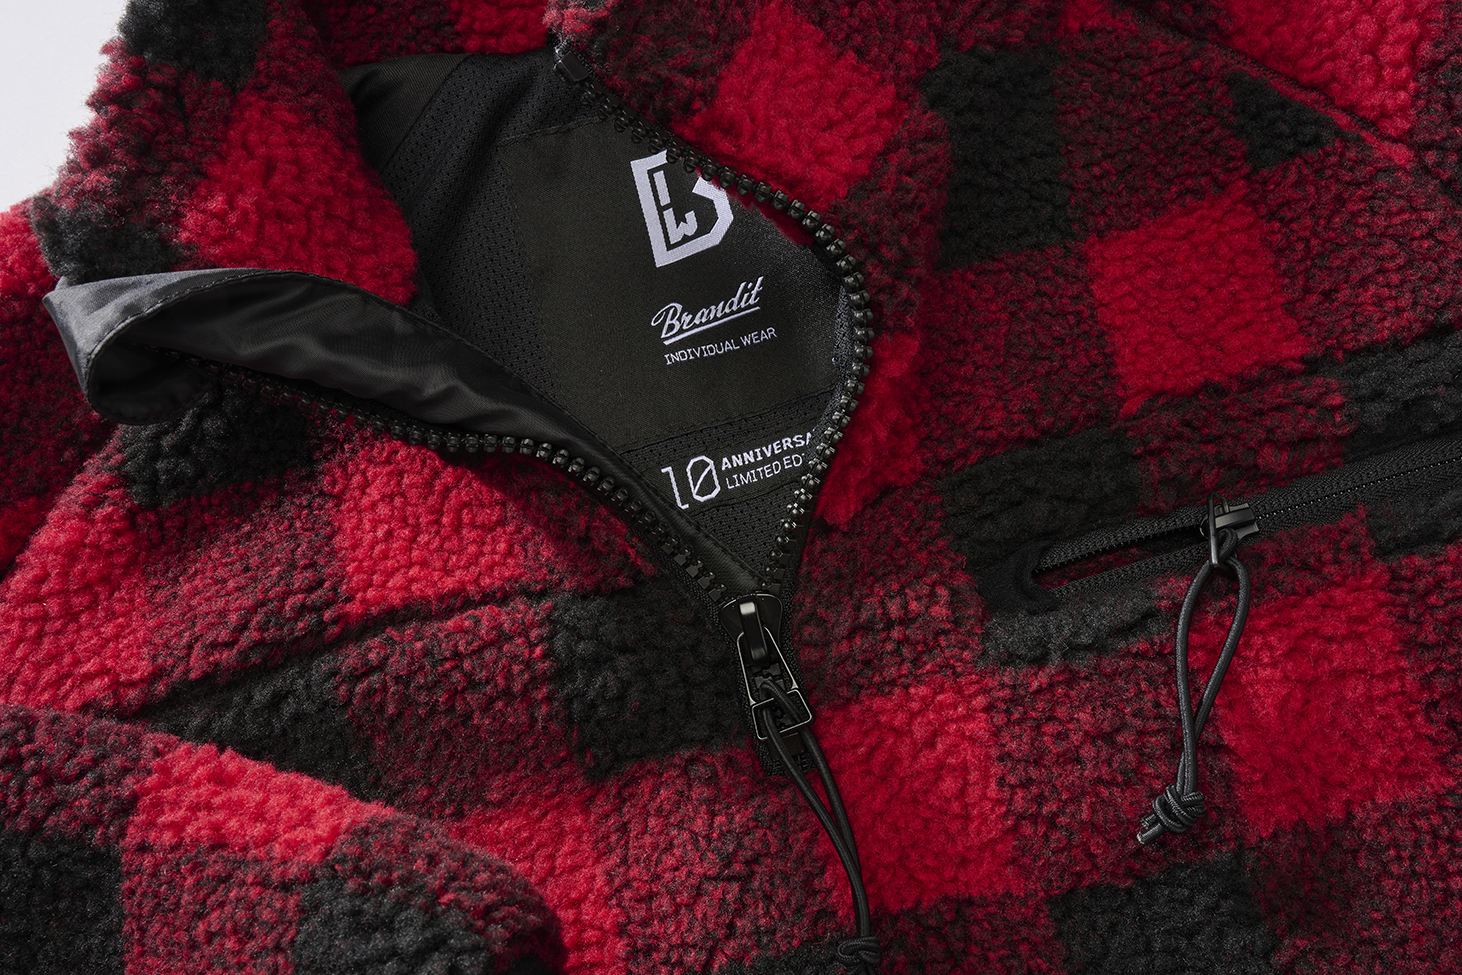 Brandit Fleece Quarter Zip Jacket red and black close up